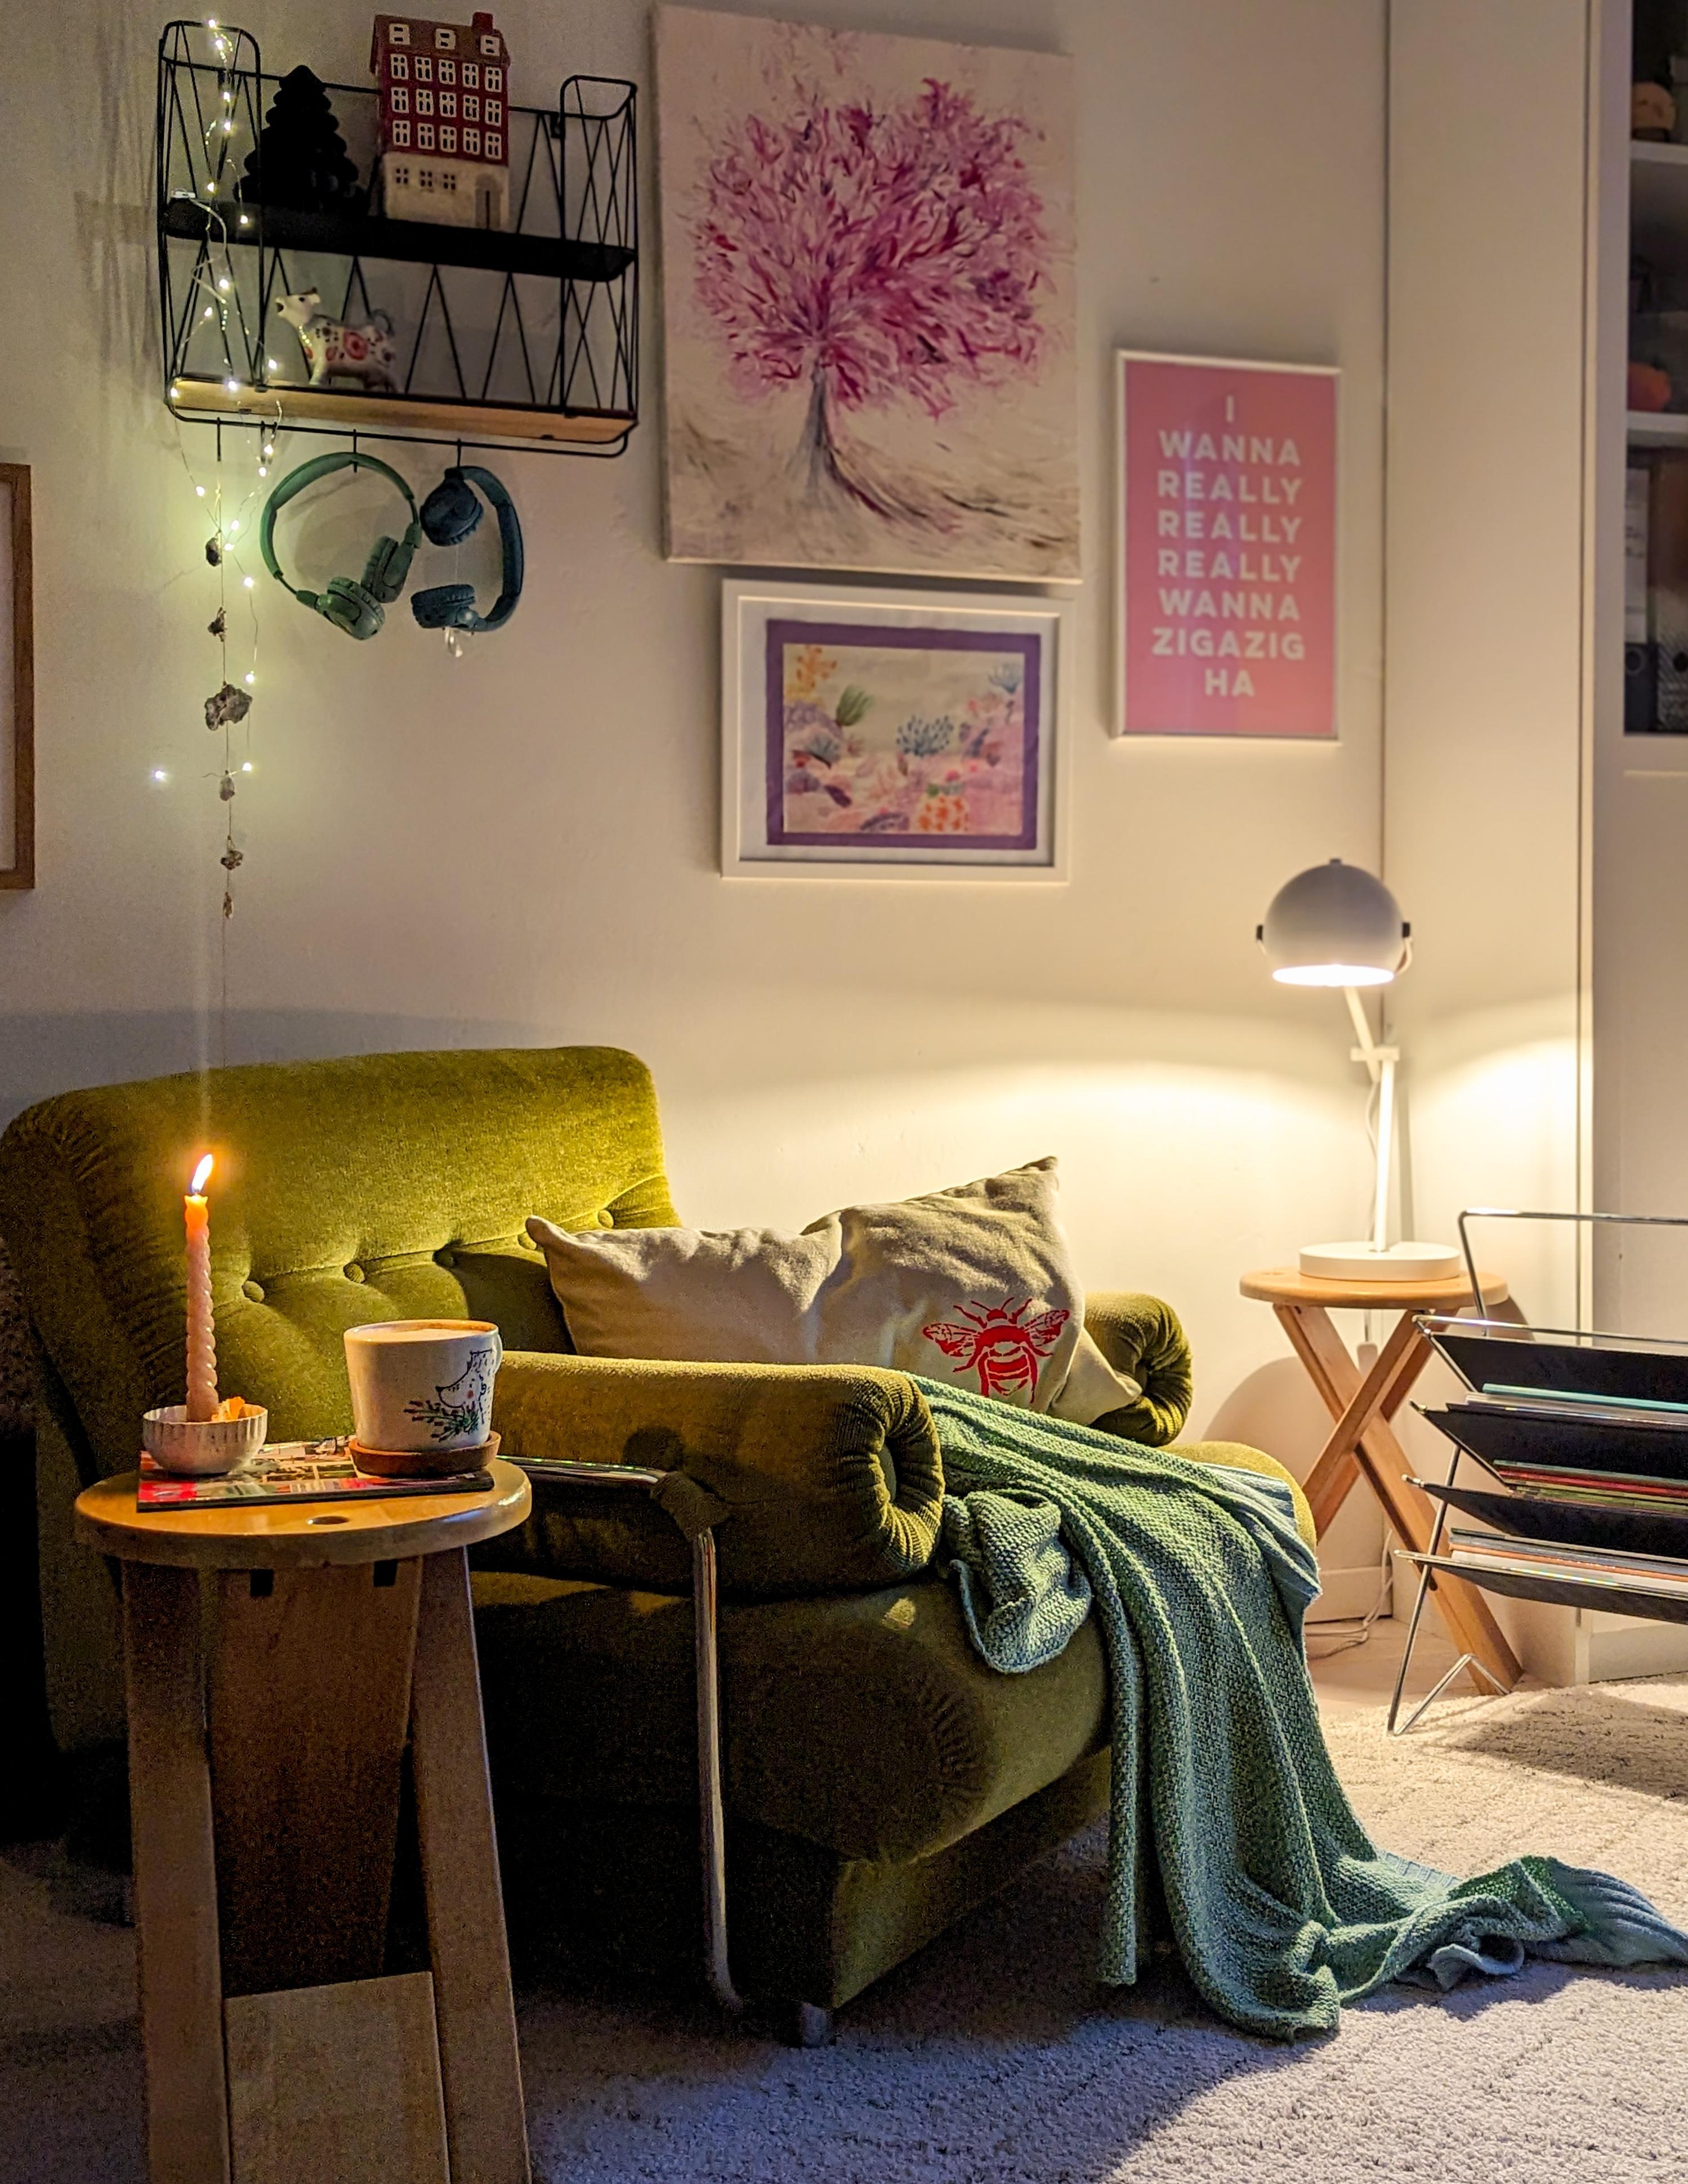 Gemütlich mit #kaffee im #lieblingssessel starten

#livingroom #interiordecor #sessel #vintage #altbau #retro #dekoliebe 